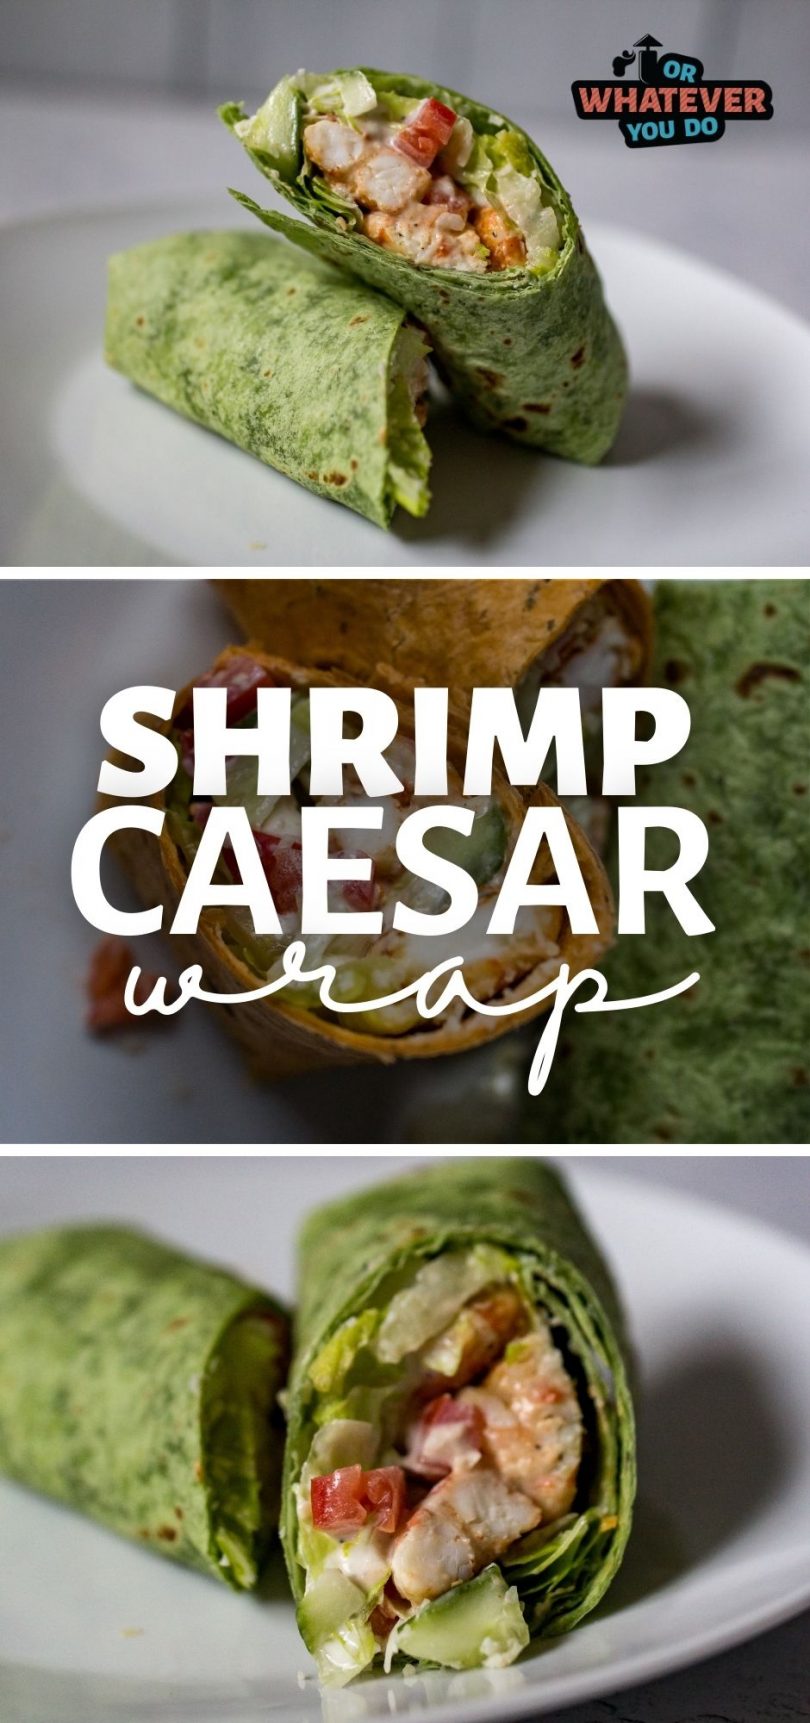 Blackened Shrimp Caesar Wrap